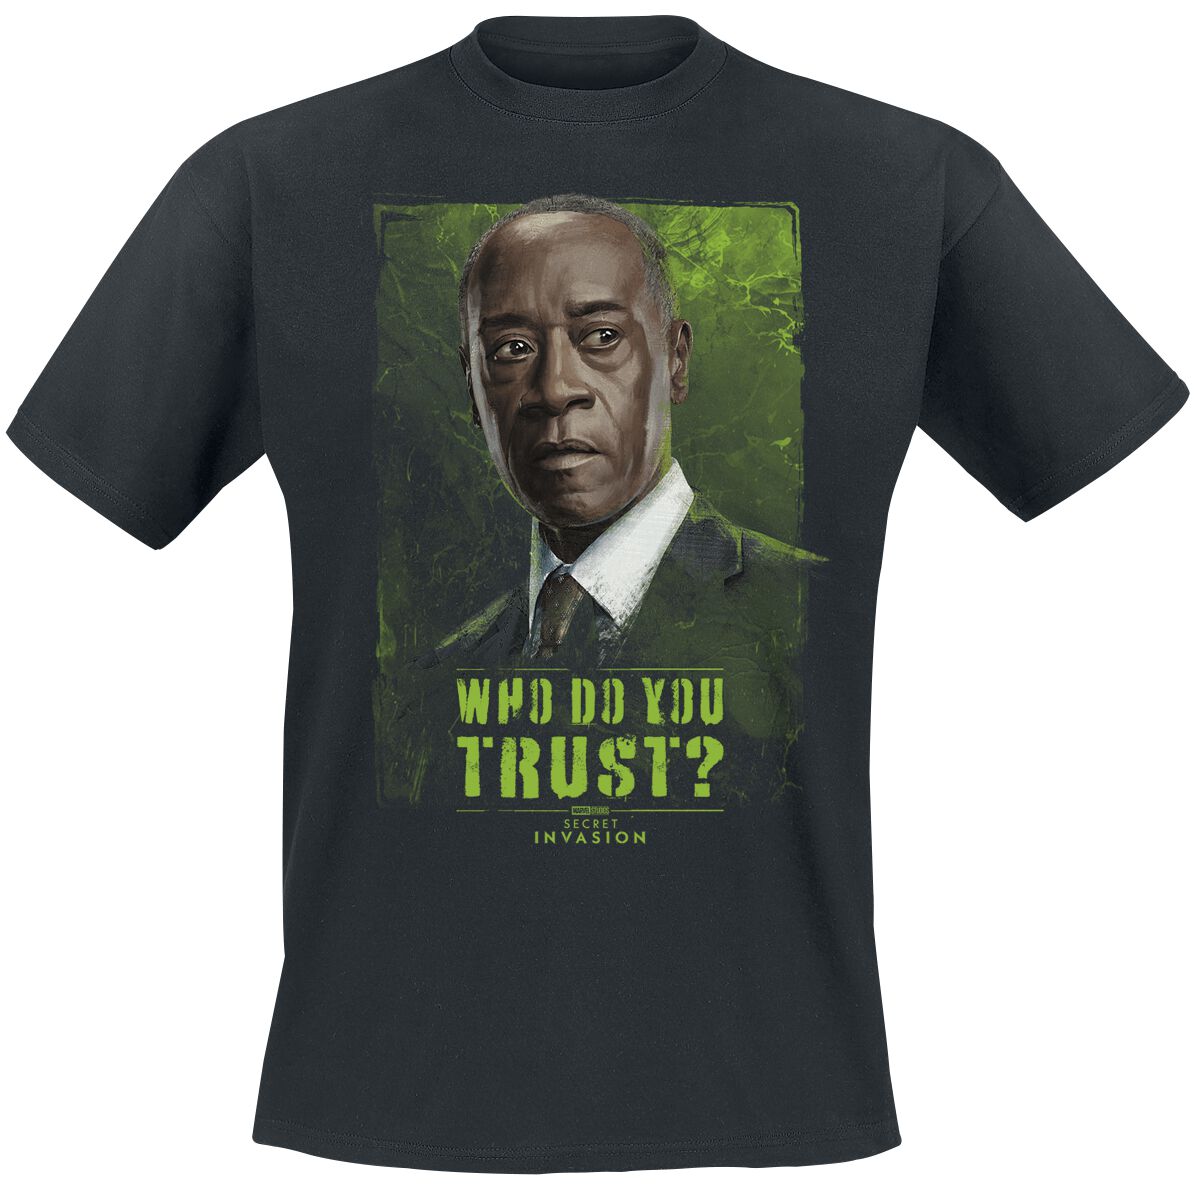 Secret Invasion - Marvel T-Shirt - Who Do You Trust? James - S bis 3XL - für Männer - Größe XXL - schwarz  - EMP exklusives Merchandise!